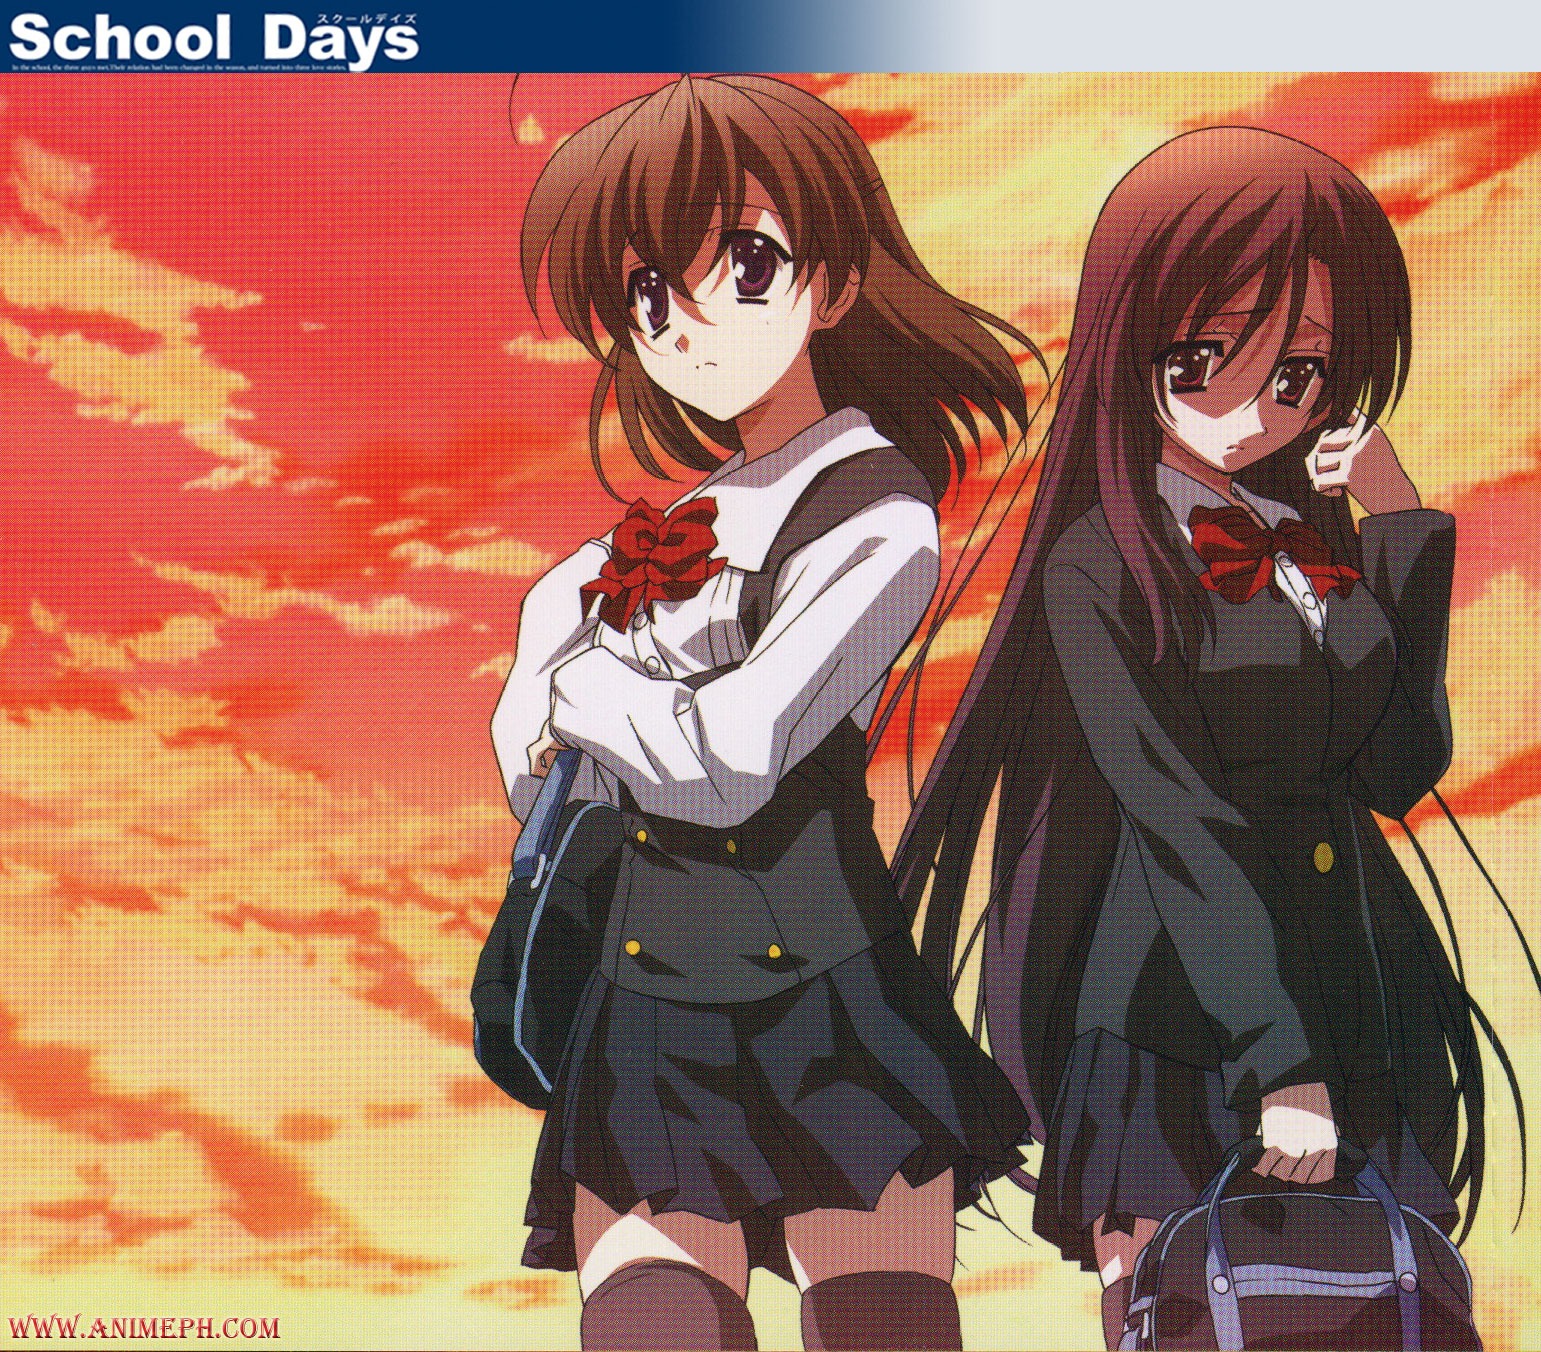 صور انمي مختلفة Wallpaper-school-days-anime